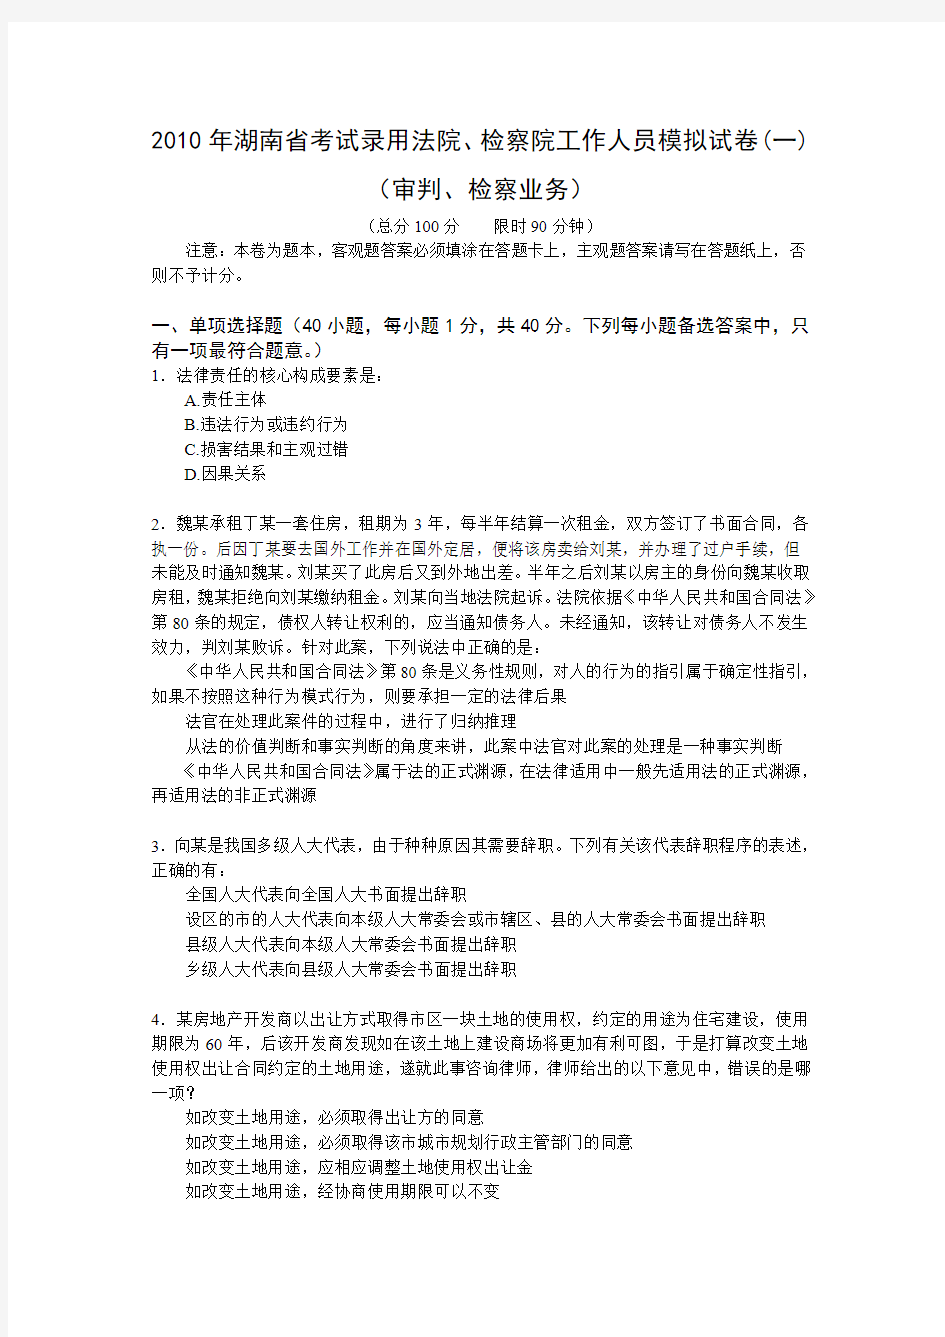 2010年湖南省考试录用法院、检察院工作人员模拟试卷(一)(审判、检察业务)